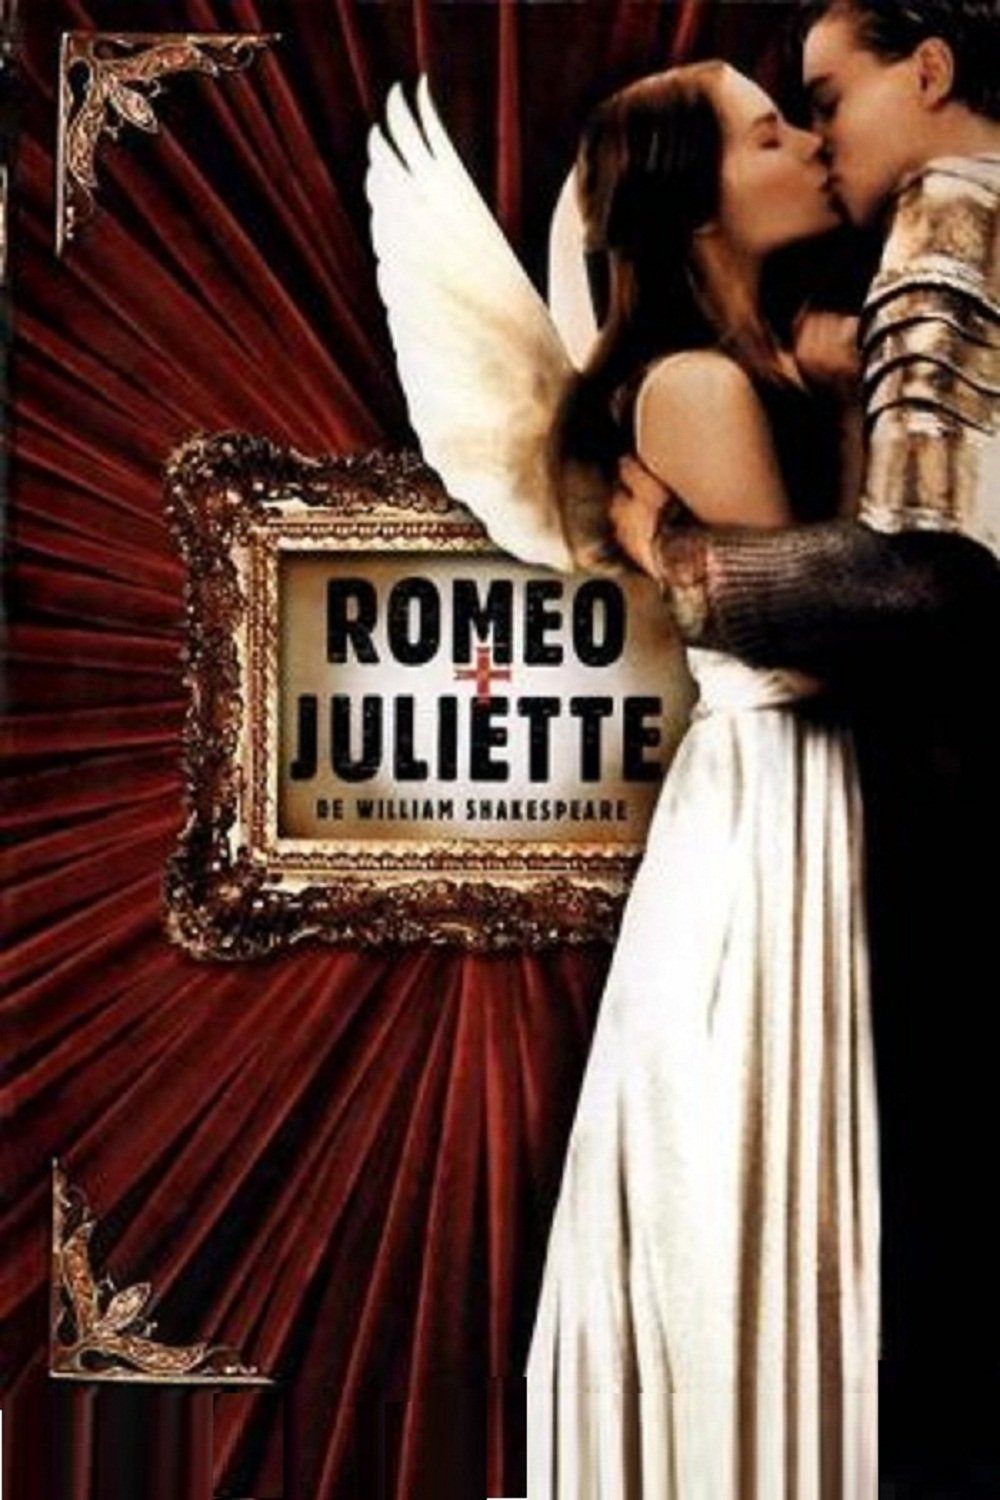 Romeo Juliette Film Gratuit Affiches, posters et images de Roméo + Juliette (1996) - SensCritique